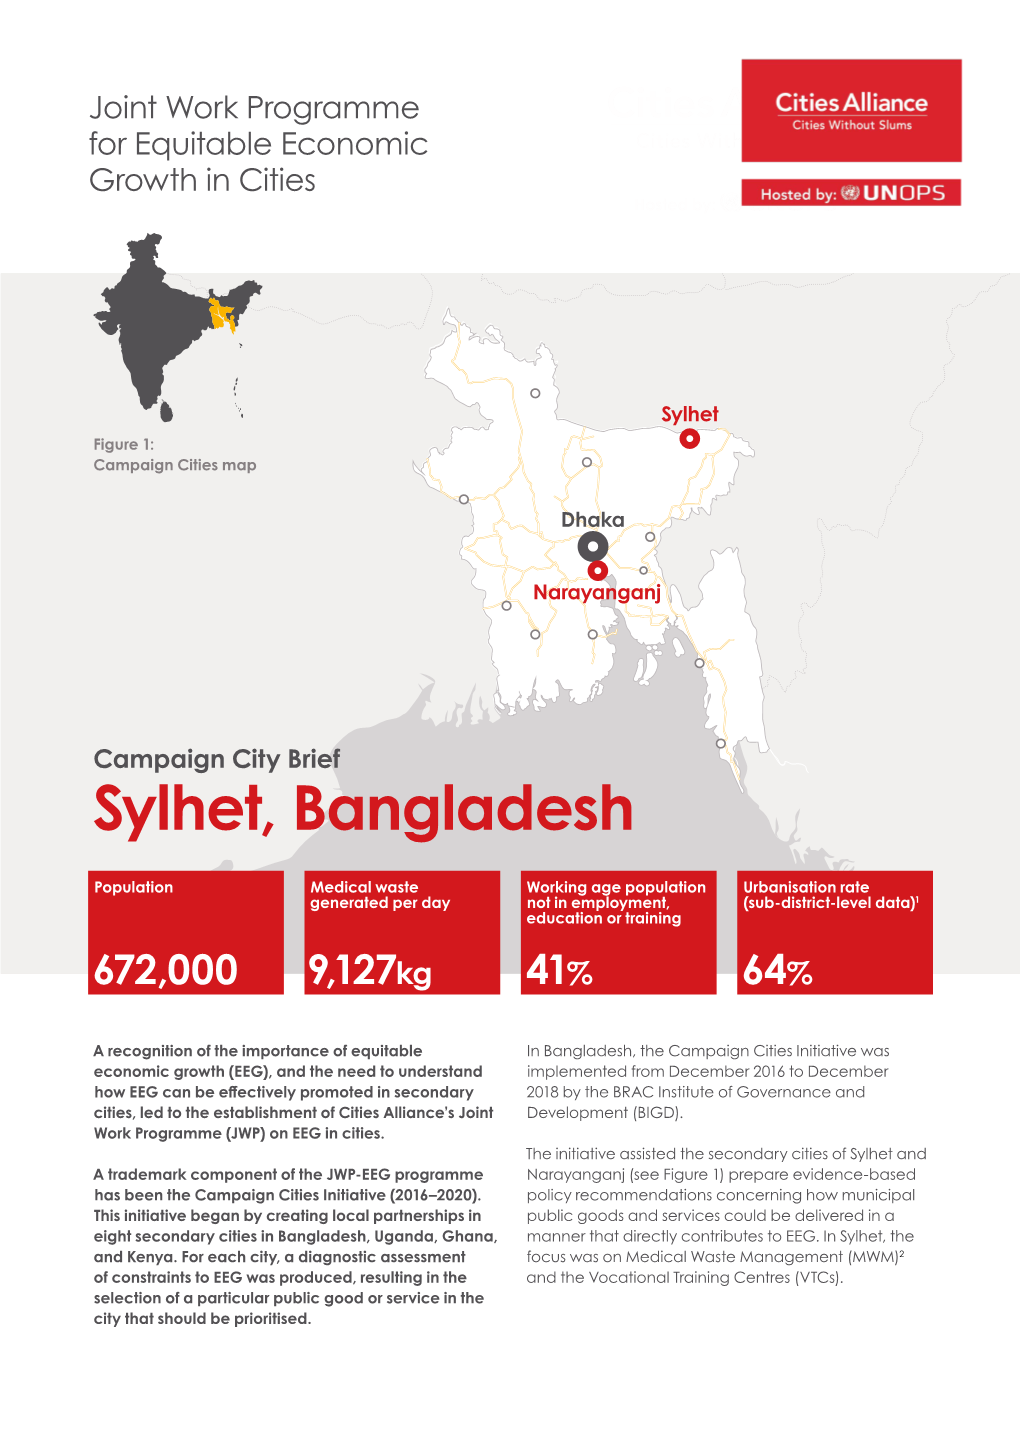 Sylhet, Bangladesh